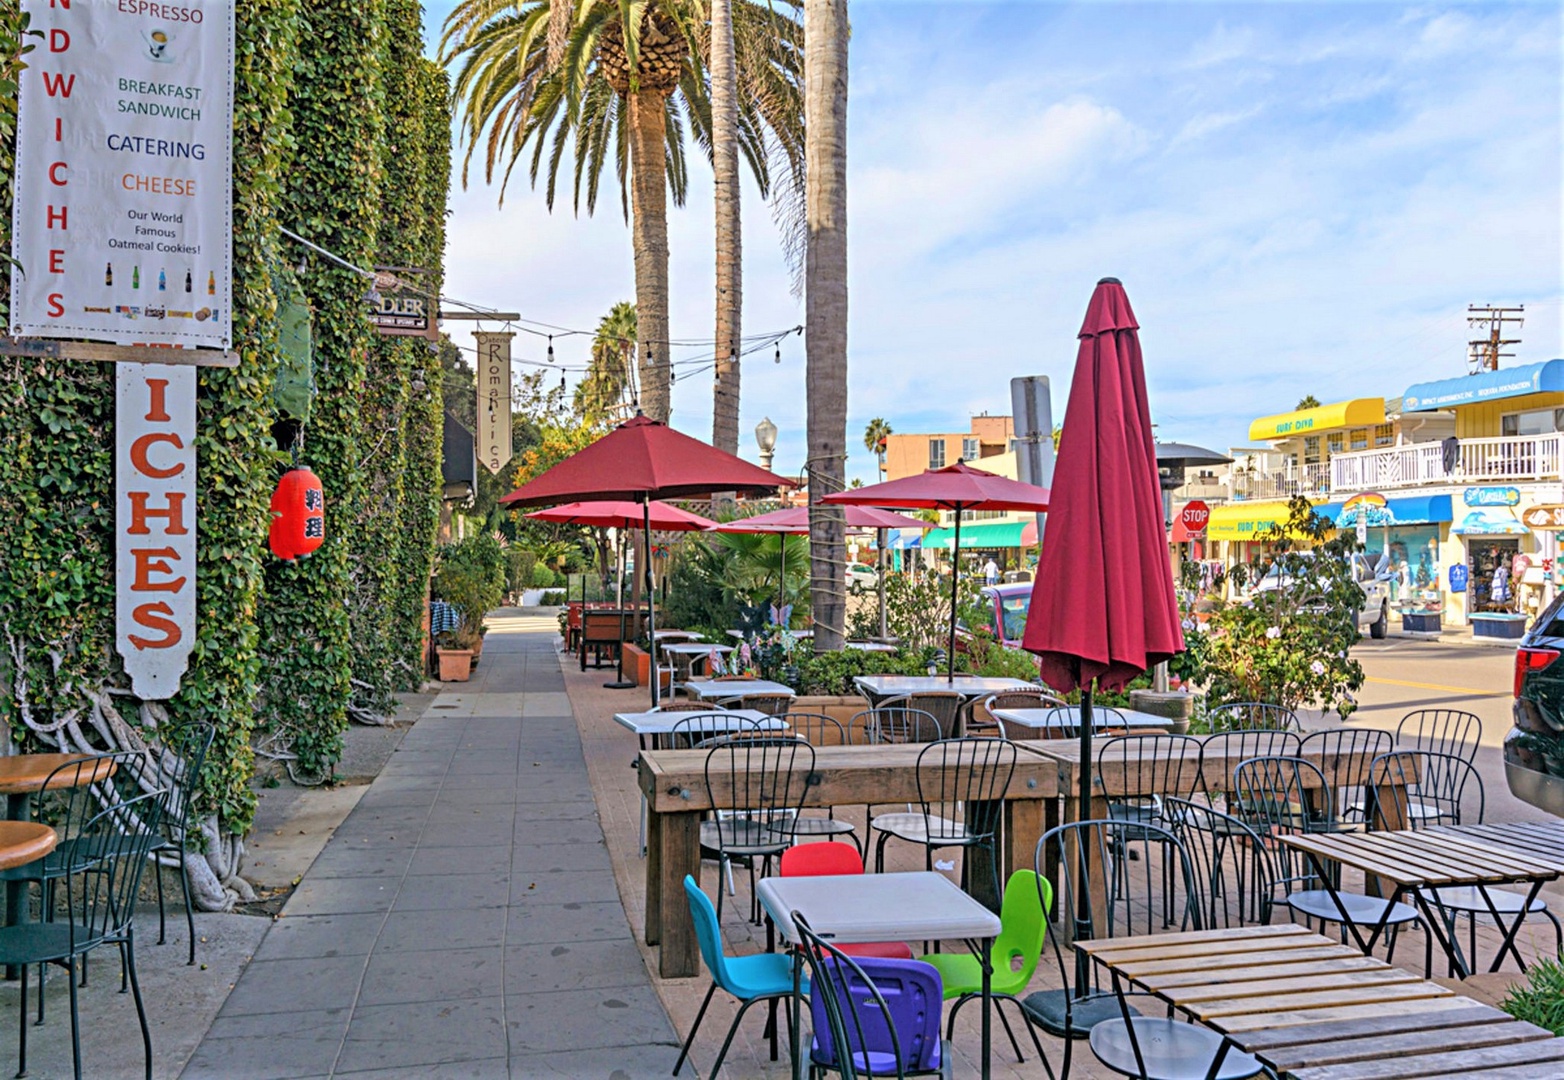 Walk to La Jolla Shores restaurants